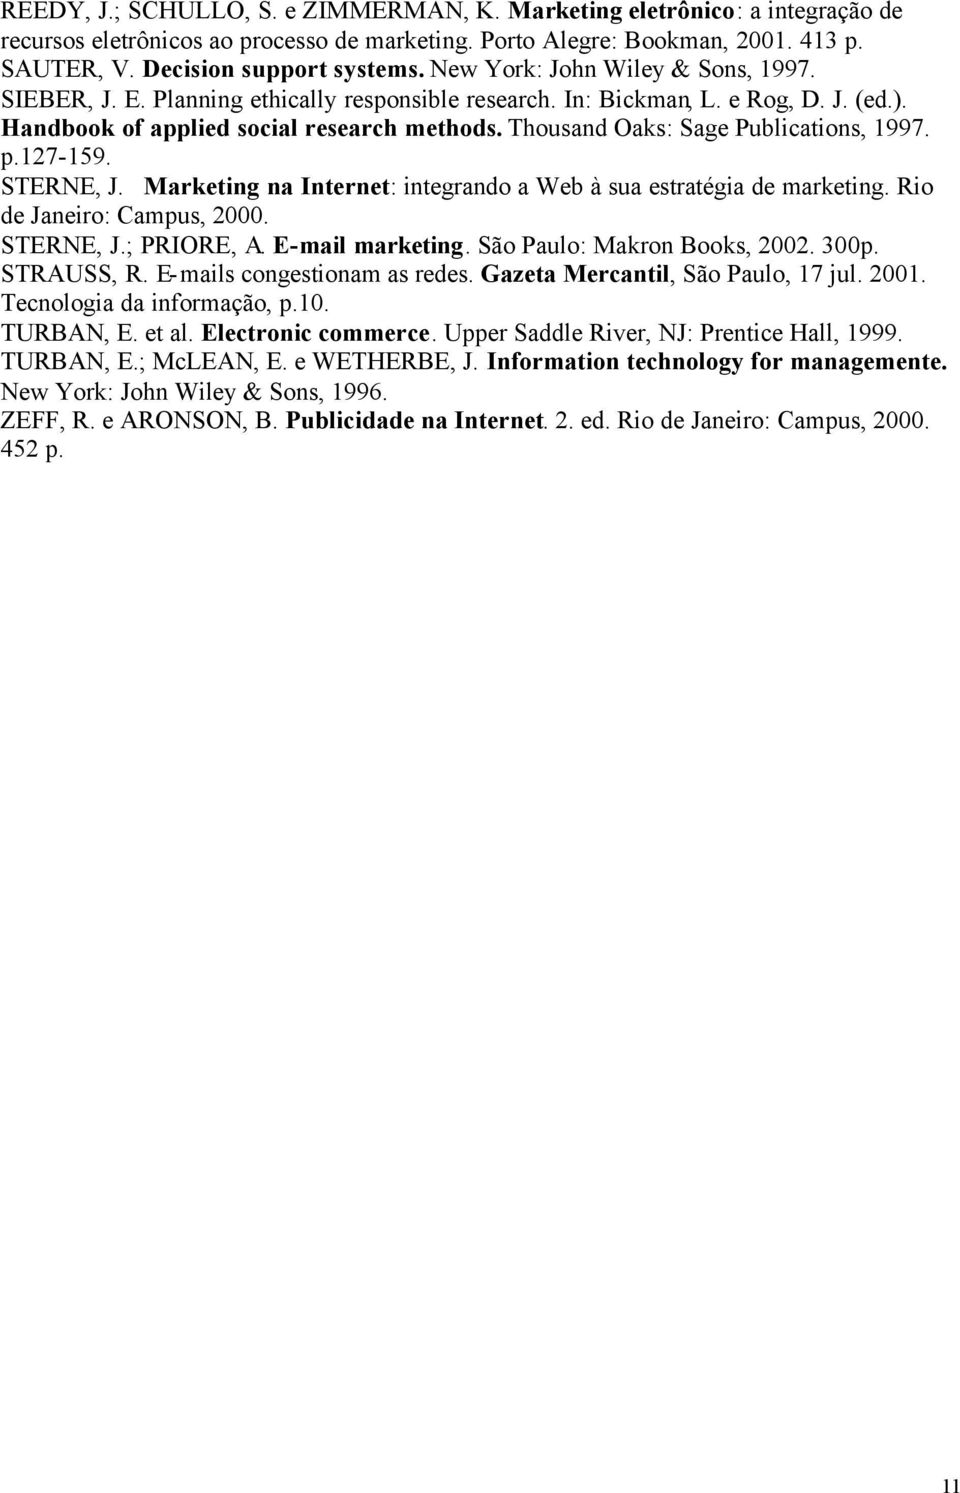 Thousand Oaks: Sage Publications, 1997. p.127-159. STERNE, J. Marketing na Internet: integrando a Web à sua estratégia de marketing. Rio de Janeiro: Campus, 2000. STERNE, J.; PRIORE, A.